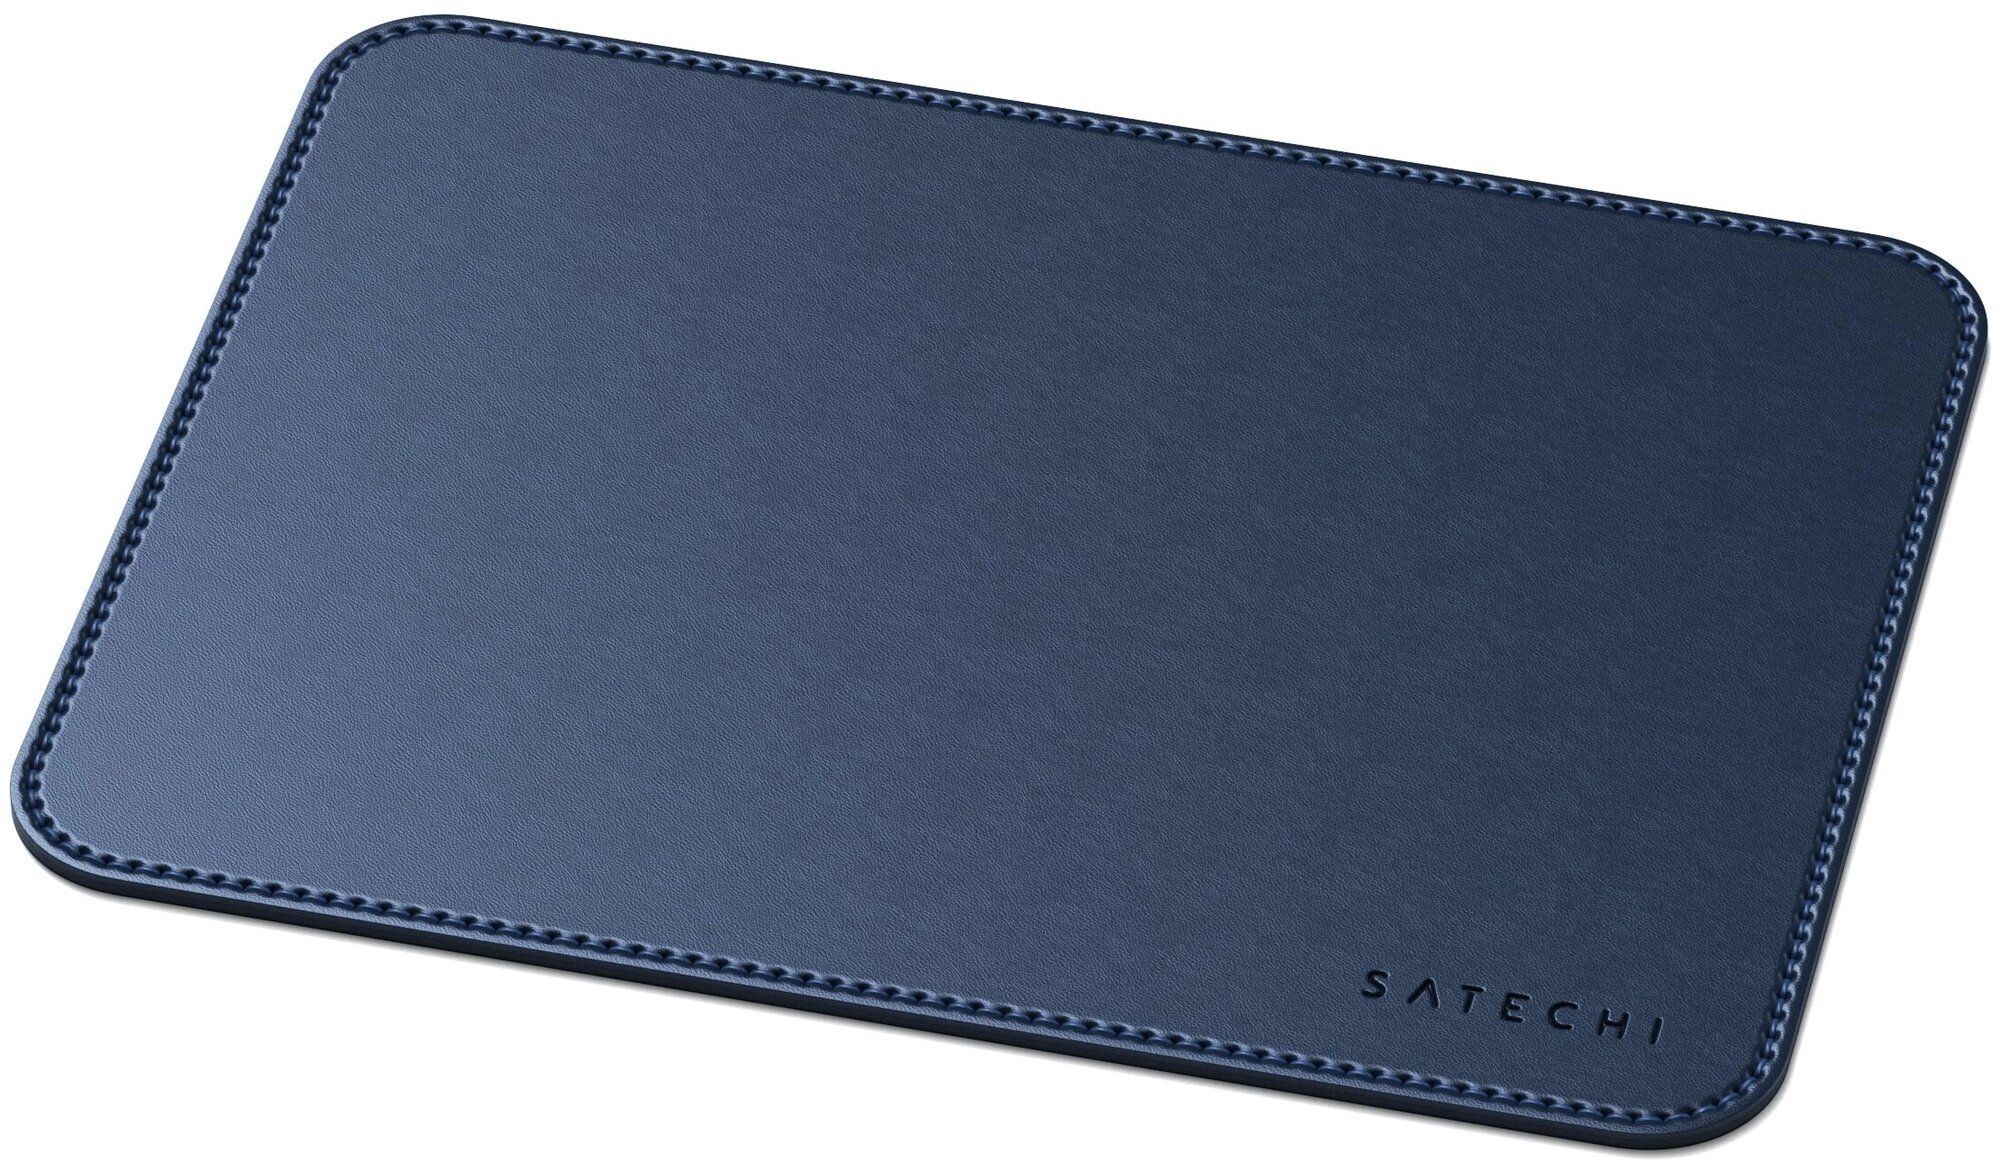 Коврик Satechi Eco Leather Mouse Pad Размер 25 x 19 см. синий.